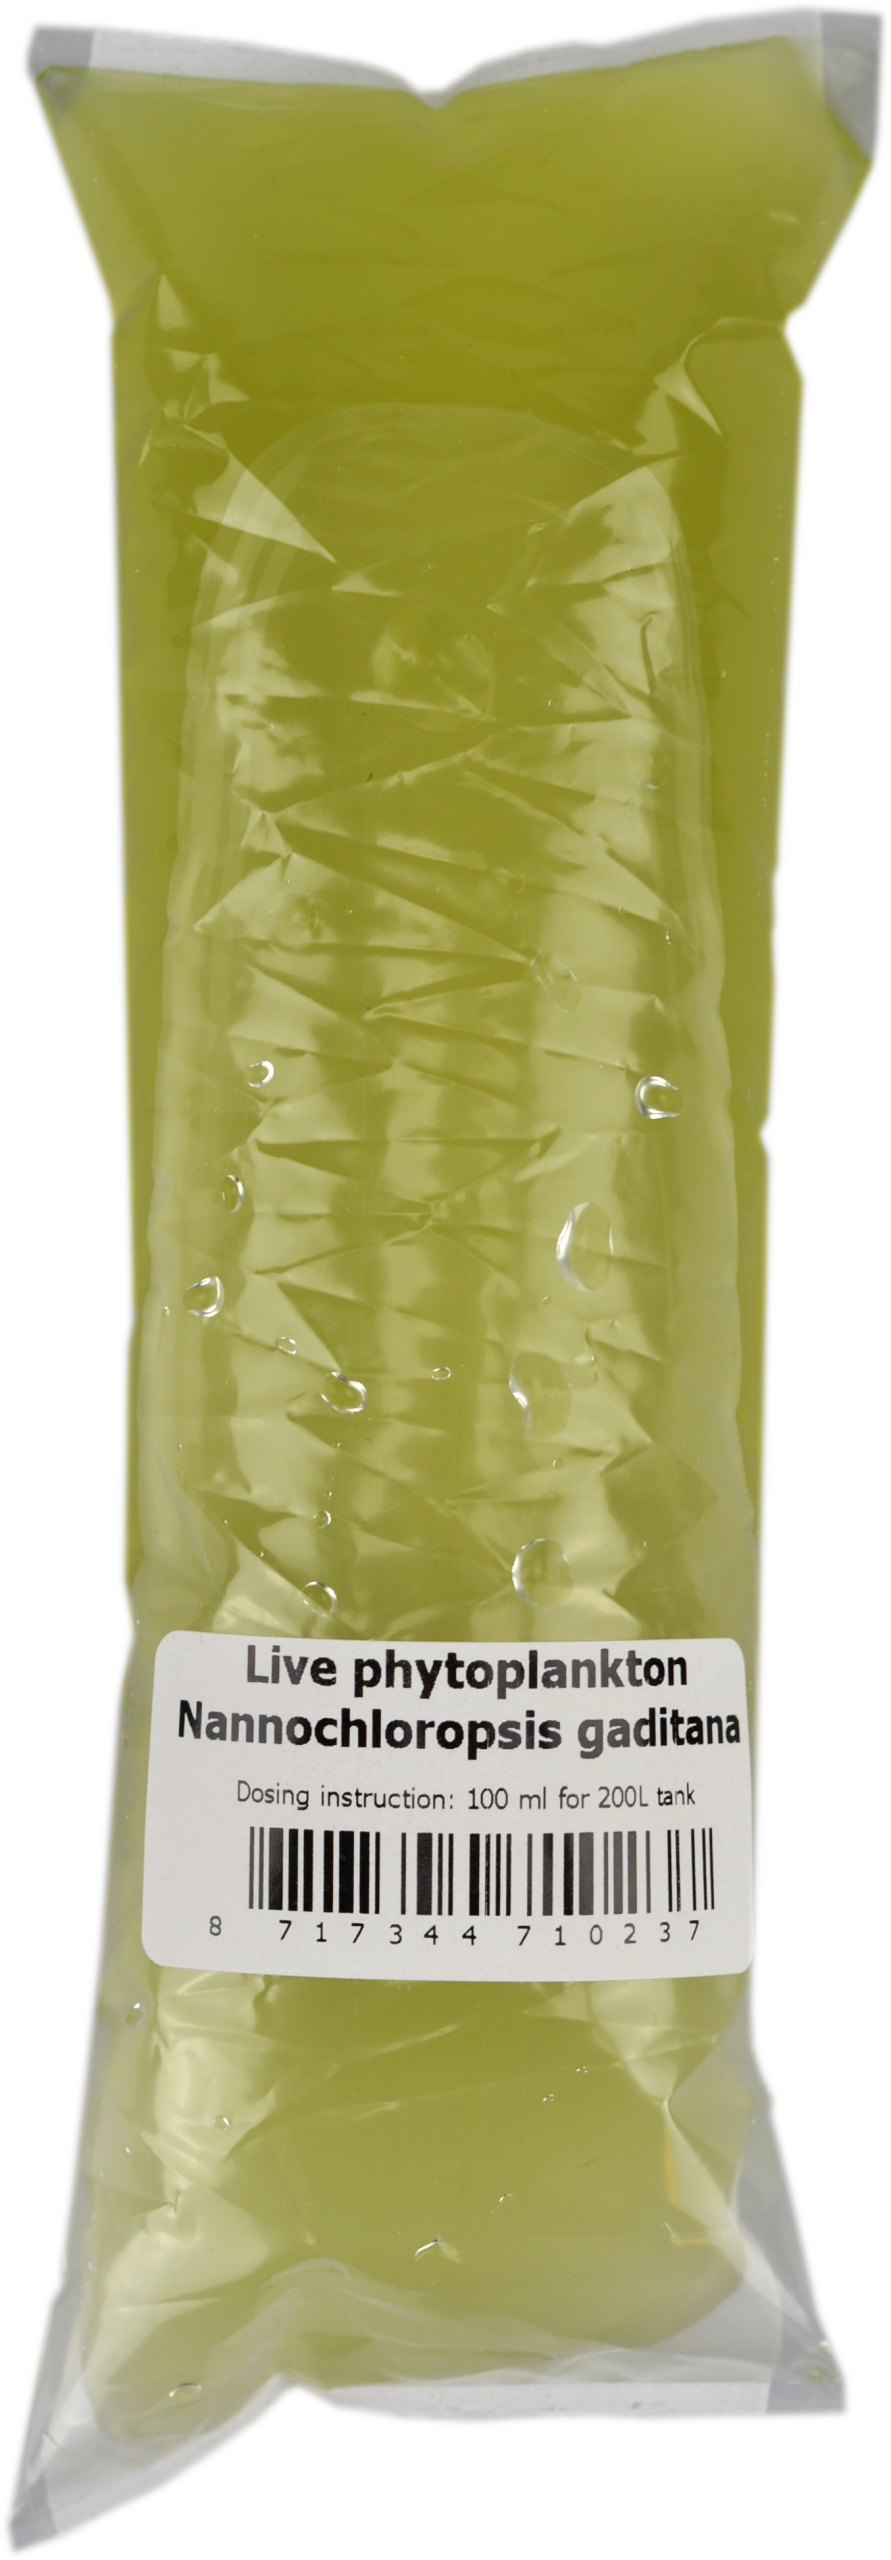 AQUADIP Phytoplankton Nannochloropsis gaditana 100ml